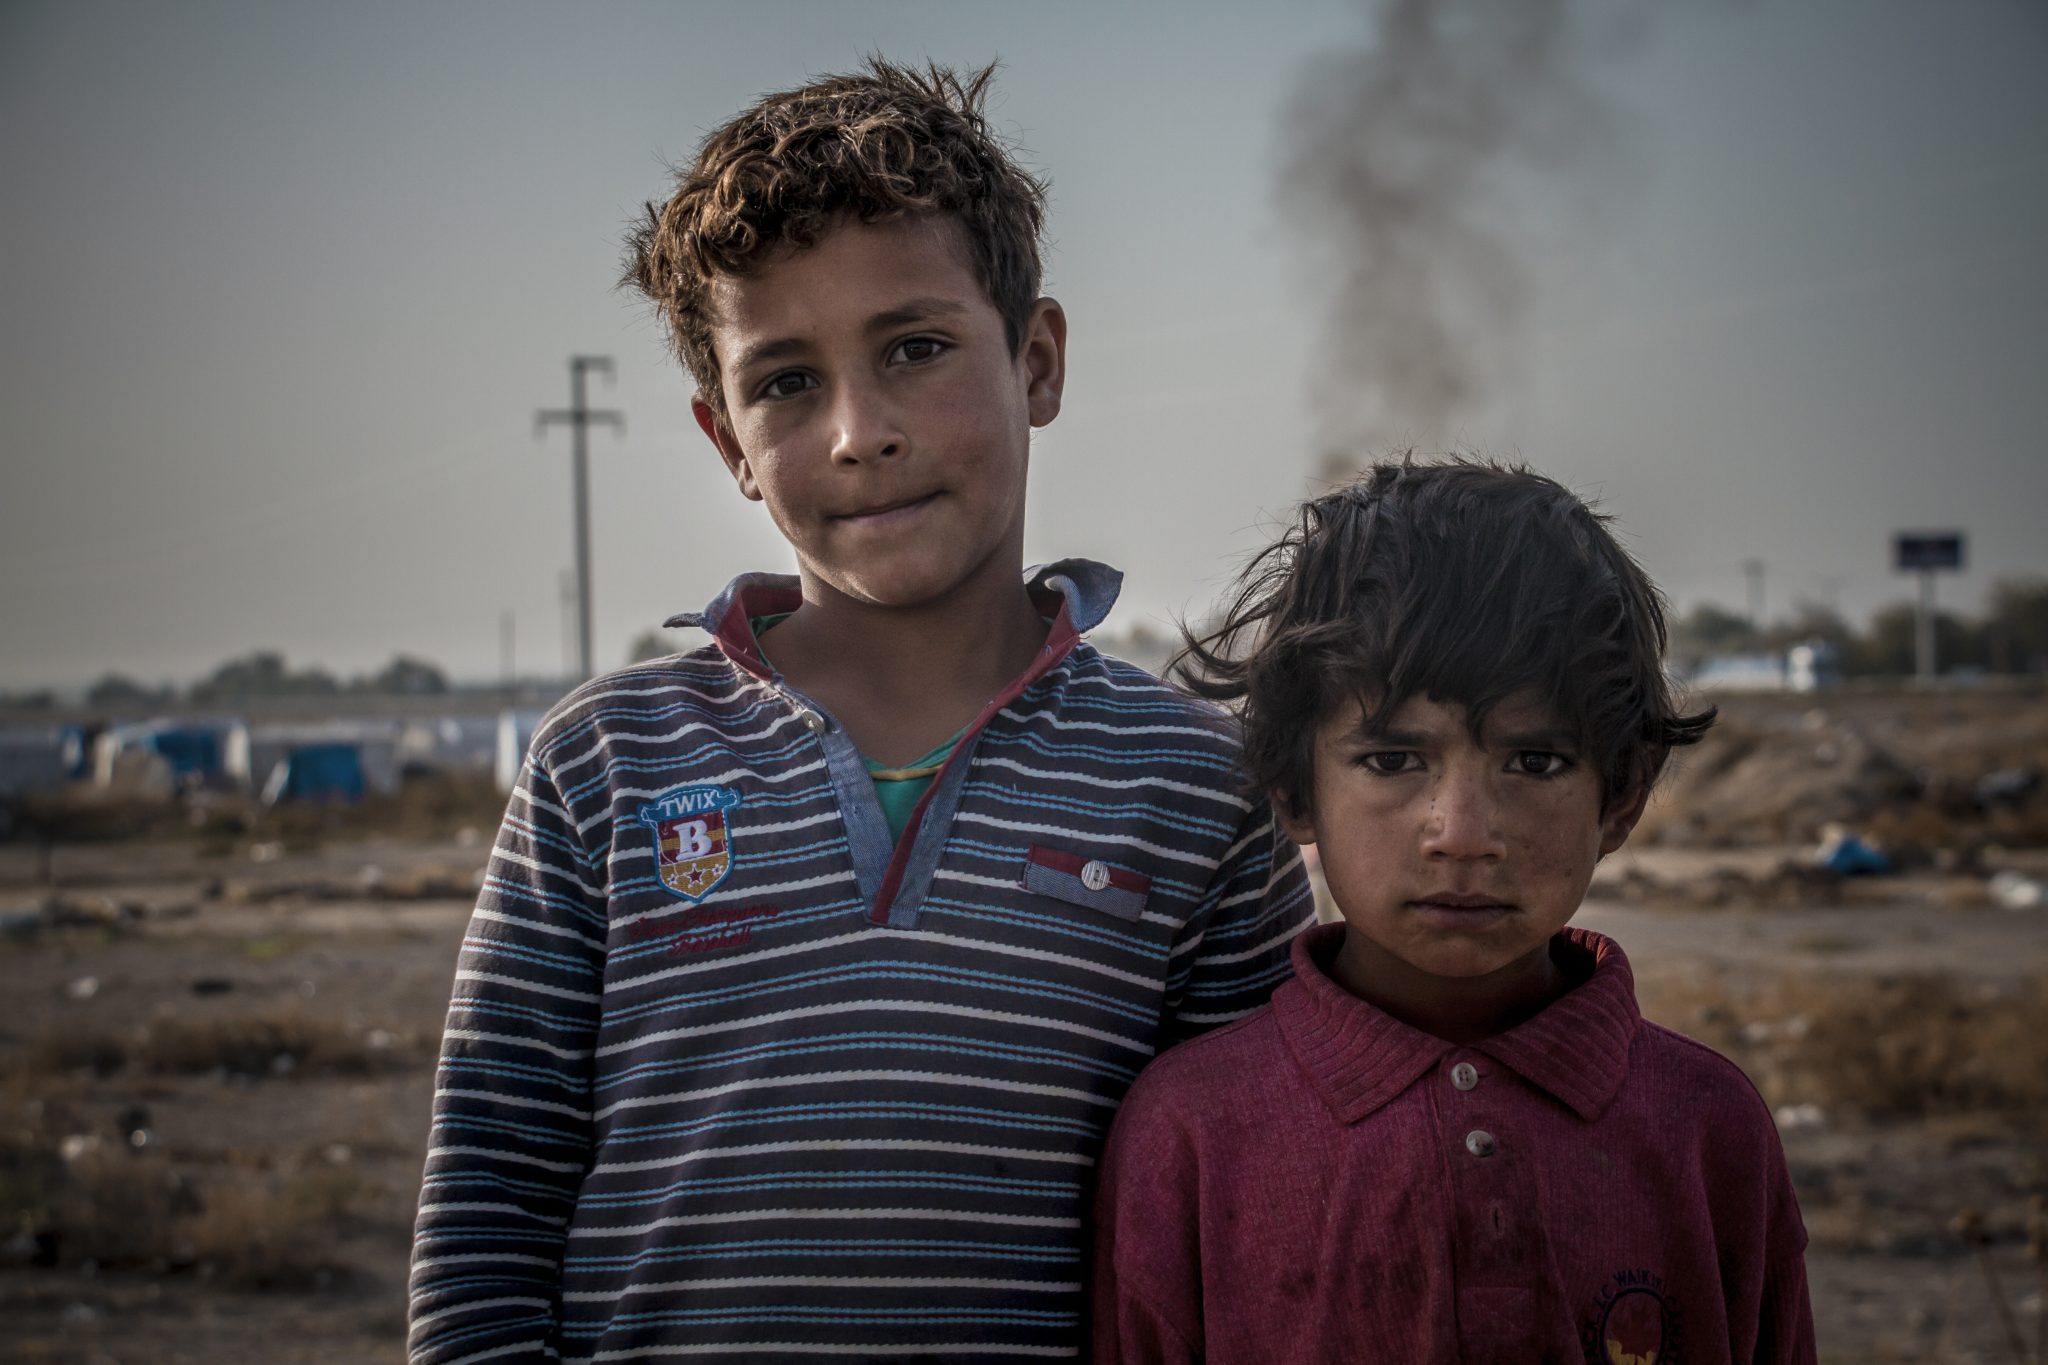 Två barn som är migranter i förgrunden. De ser trötta och nedstämda ut.